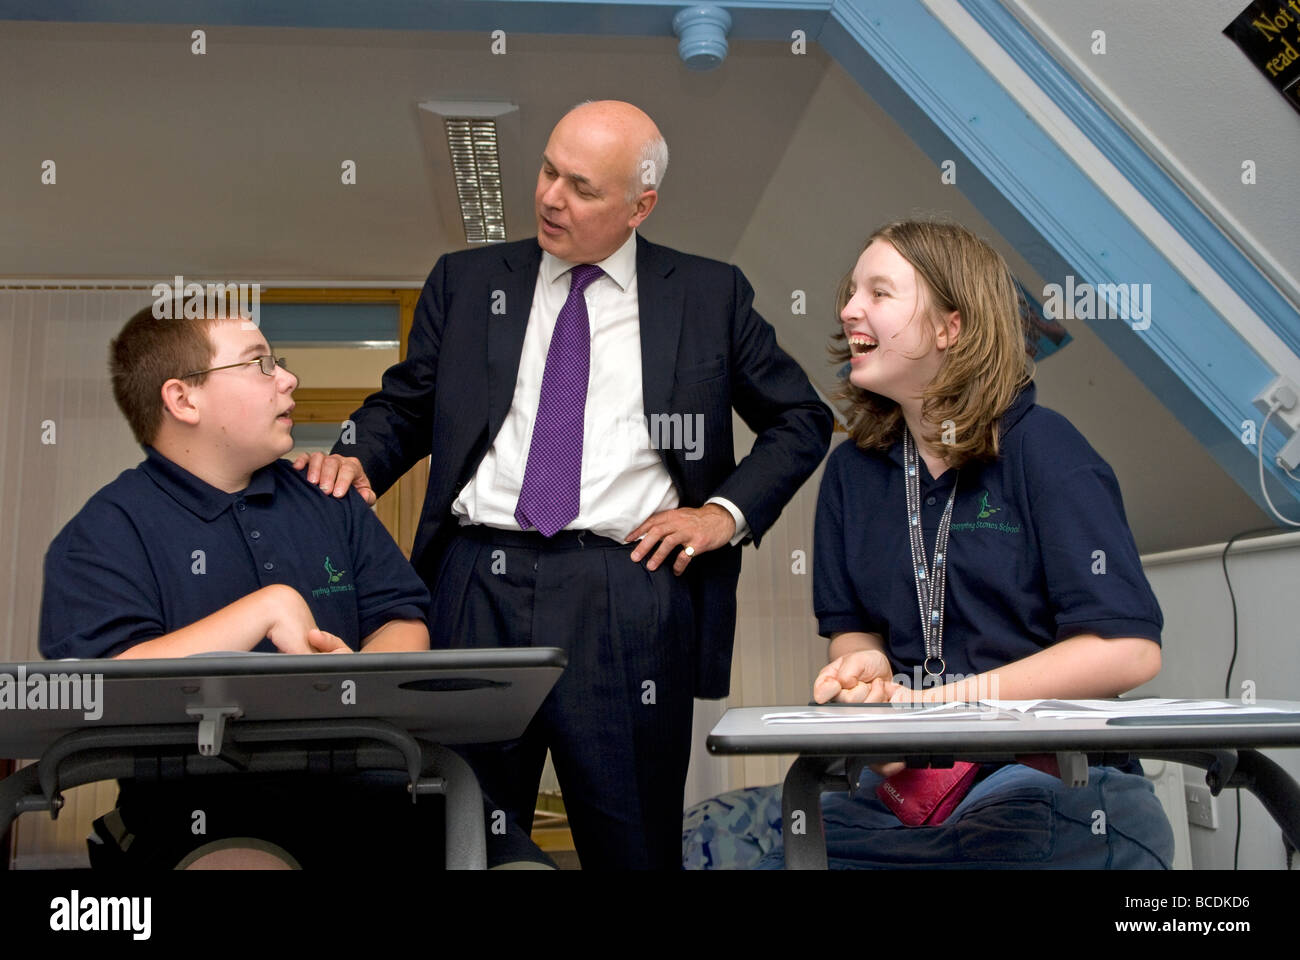 MP conservadora Iain Duncan Smith en una visita a una escuela para alumnos con hemiplejía y otras discapacidades de aprendizaje moderadas. Foto de stock